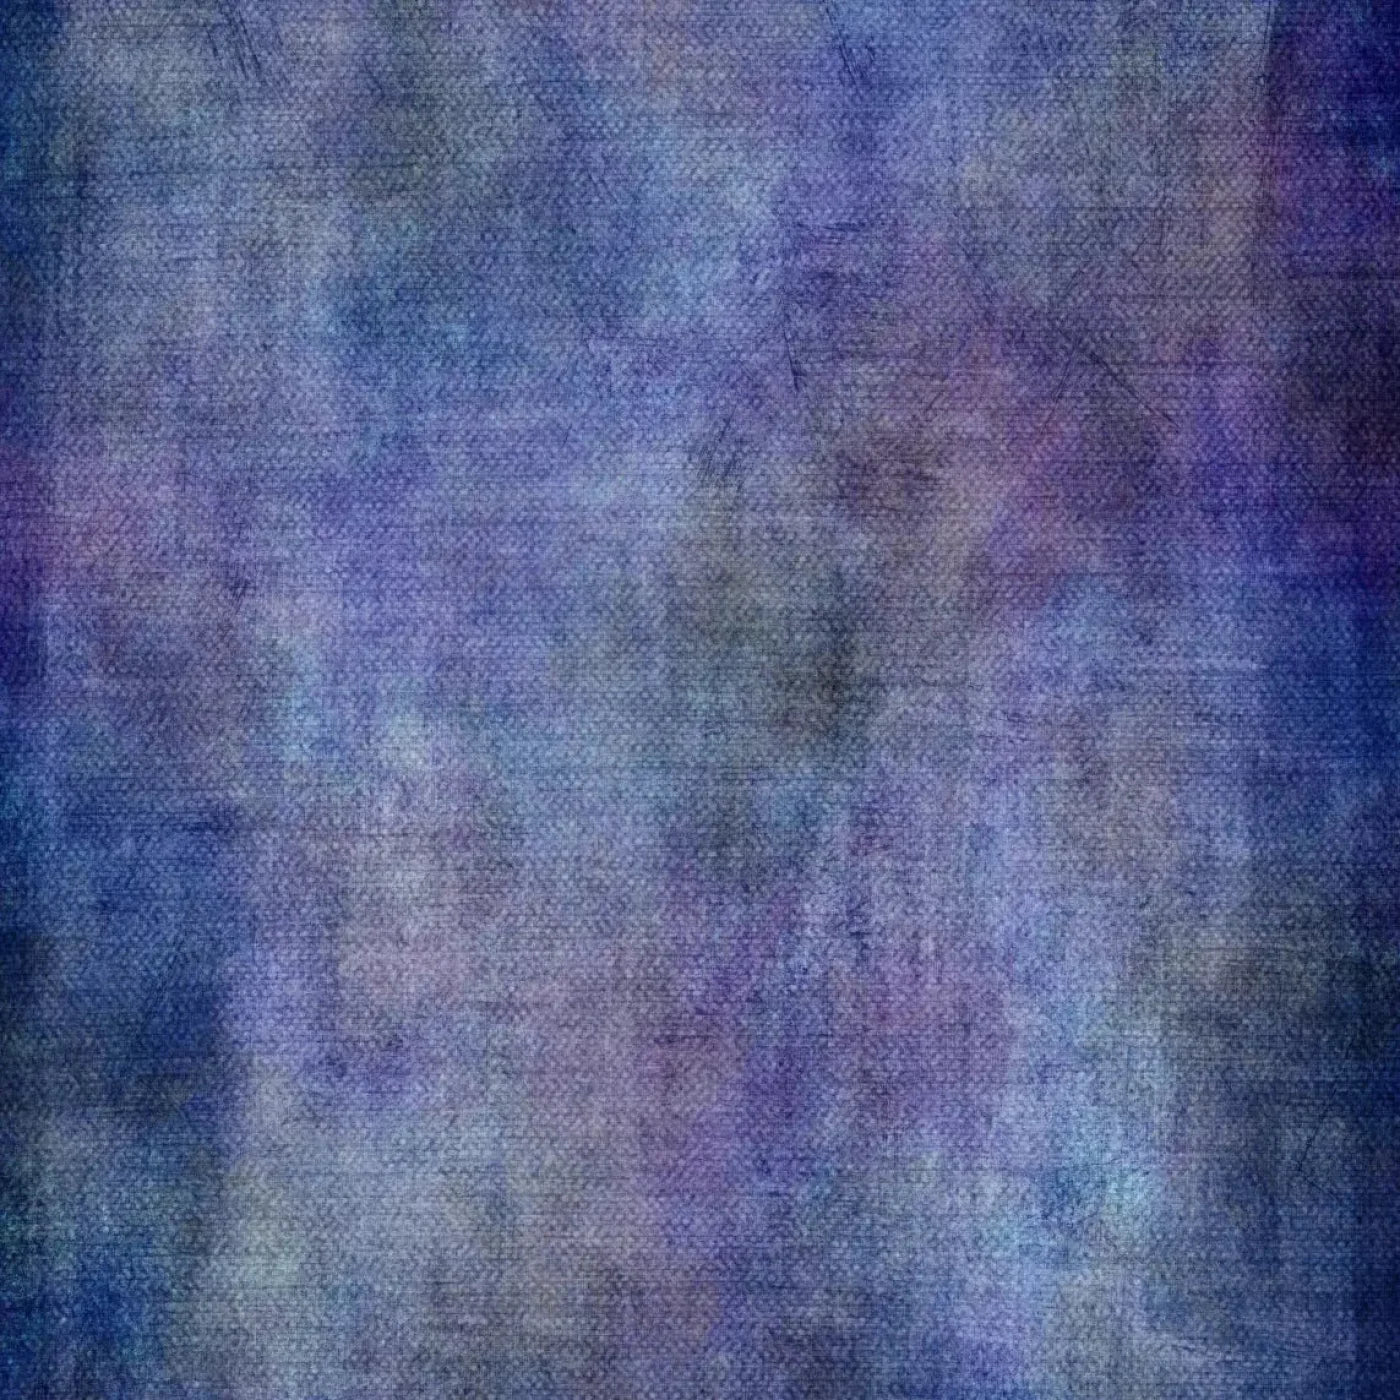 Blueberry Bliss 5X5 Rubbermat Floor ( 60 X Inch ) Backdrop